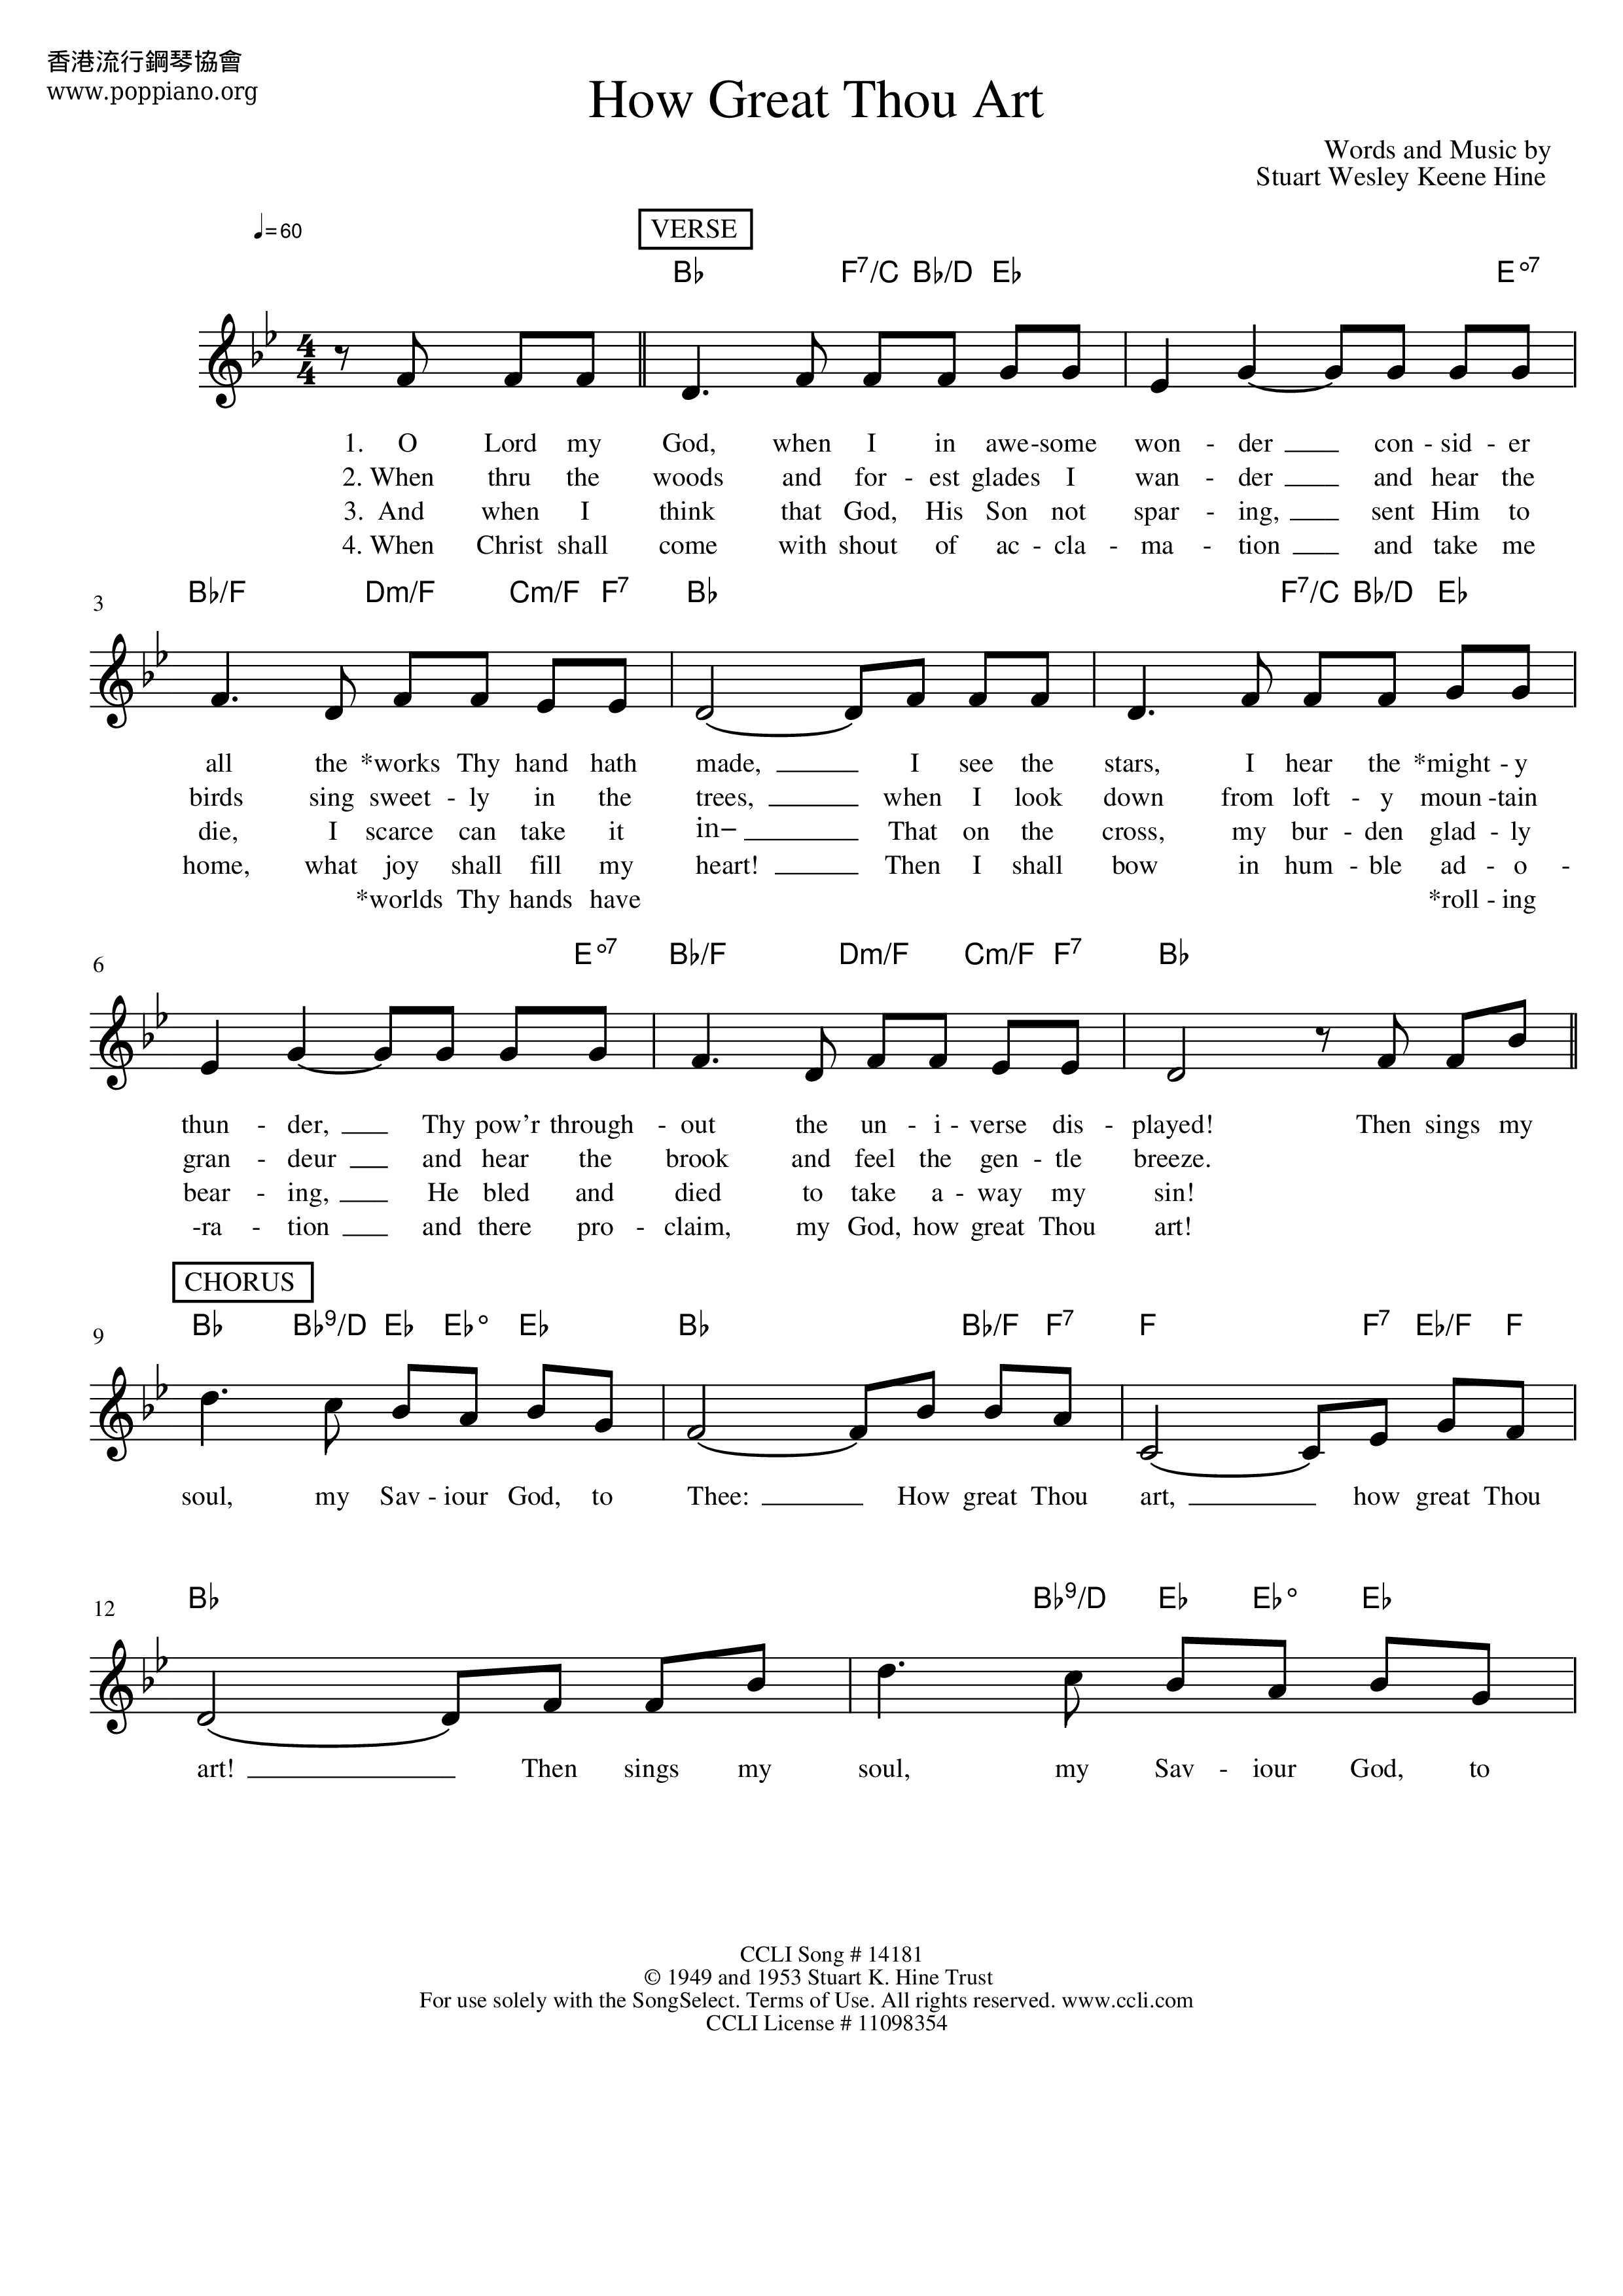 HymnHow Great Thou Art Sheet Music pdf, Free Score